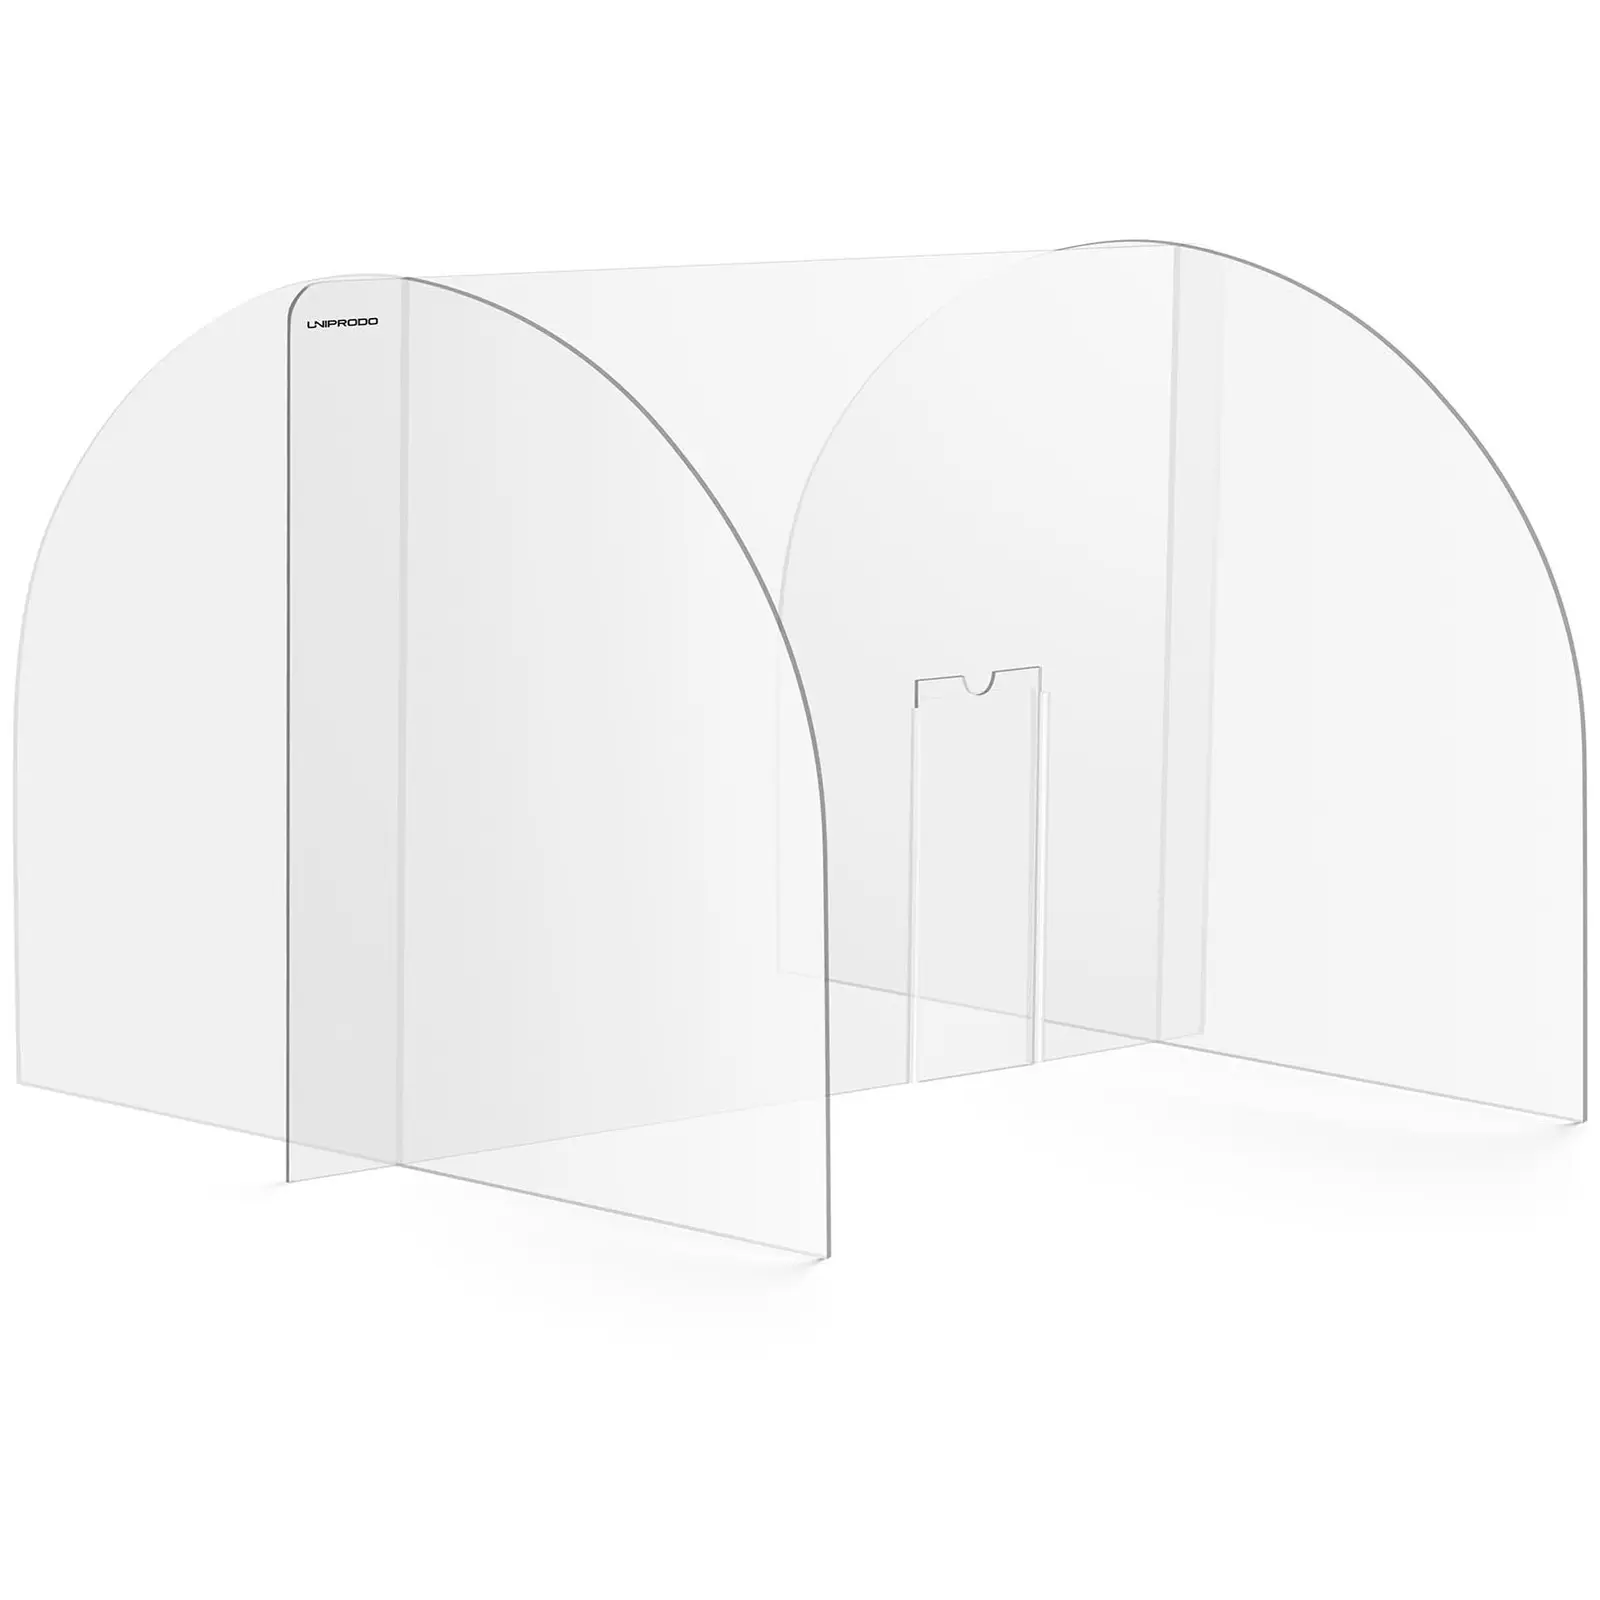 Protection plexiglass - 80 x 60 cm - Verre acrylique - Passe-documents 25 x 12 cm